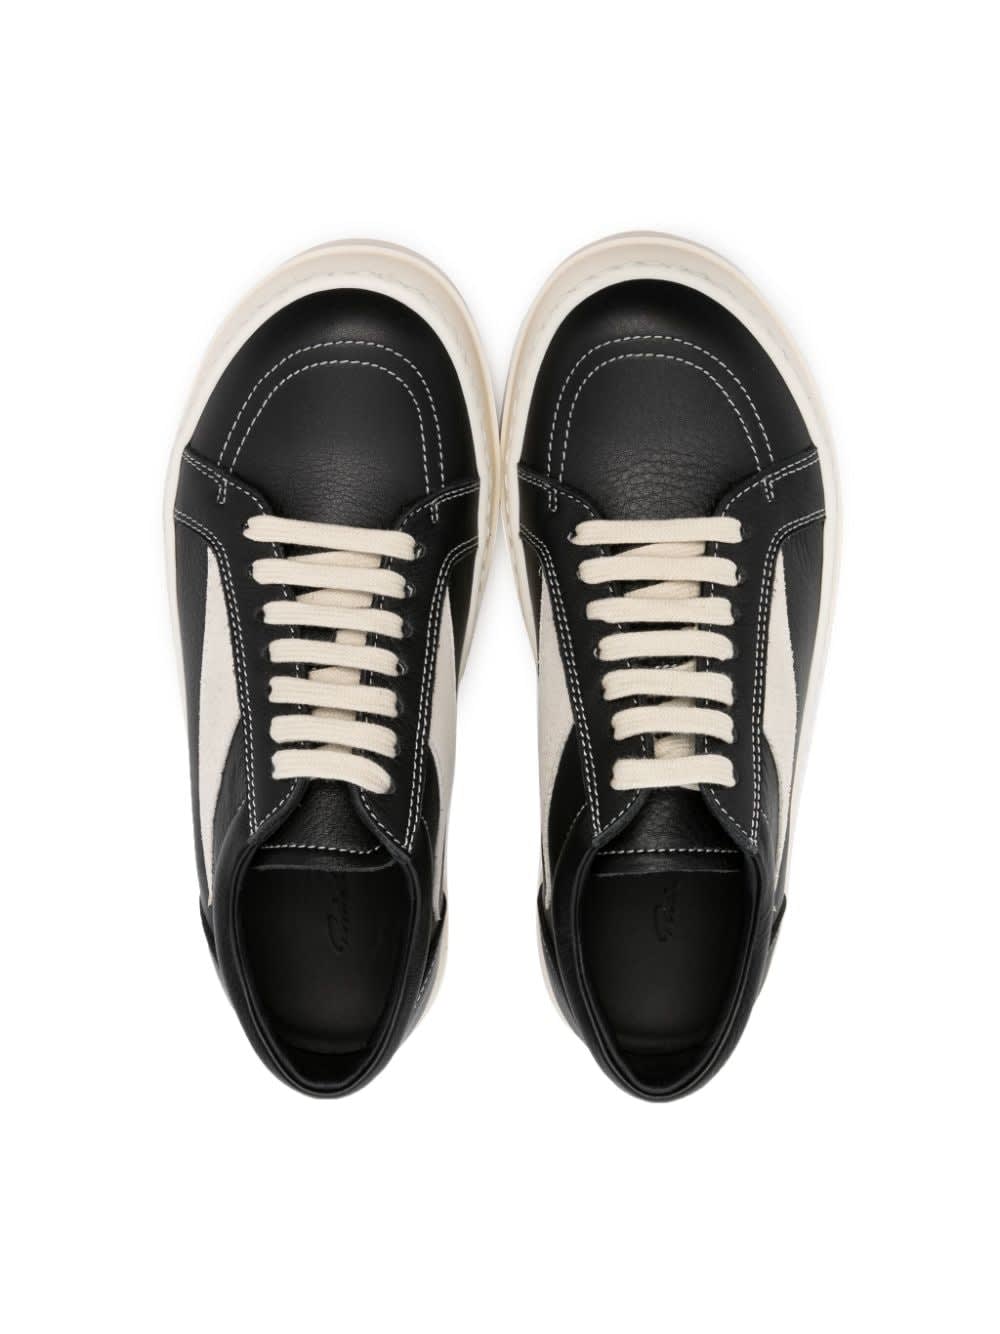 Shop Rick Owens Leather Vintage Sneakers In Black Pearl Milk